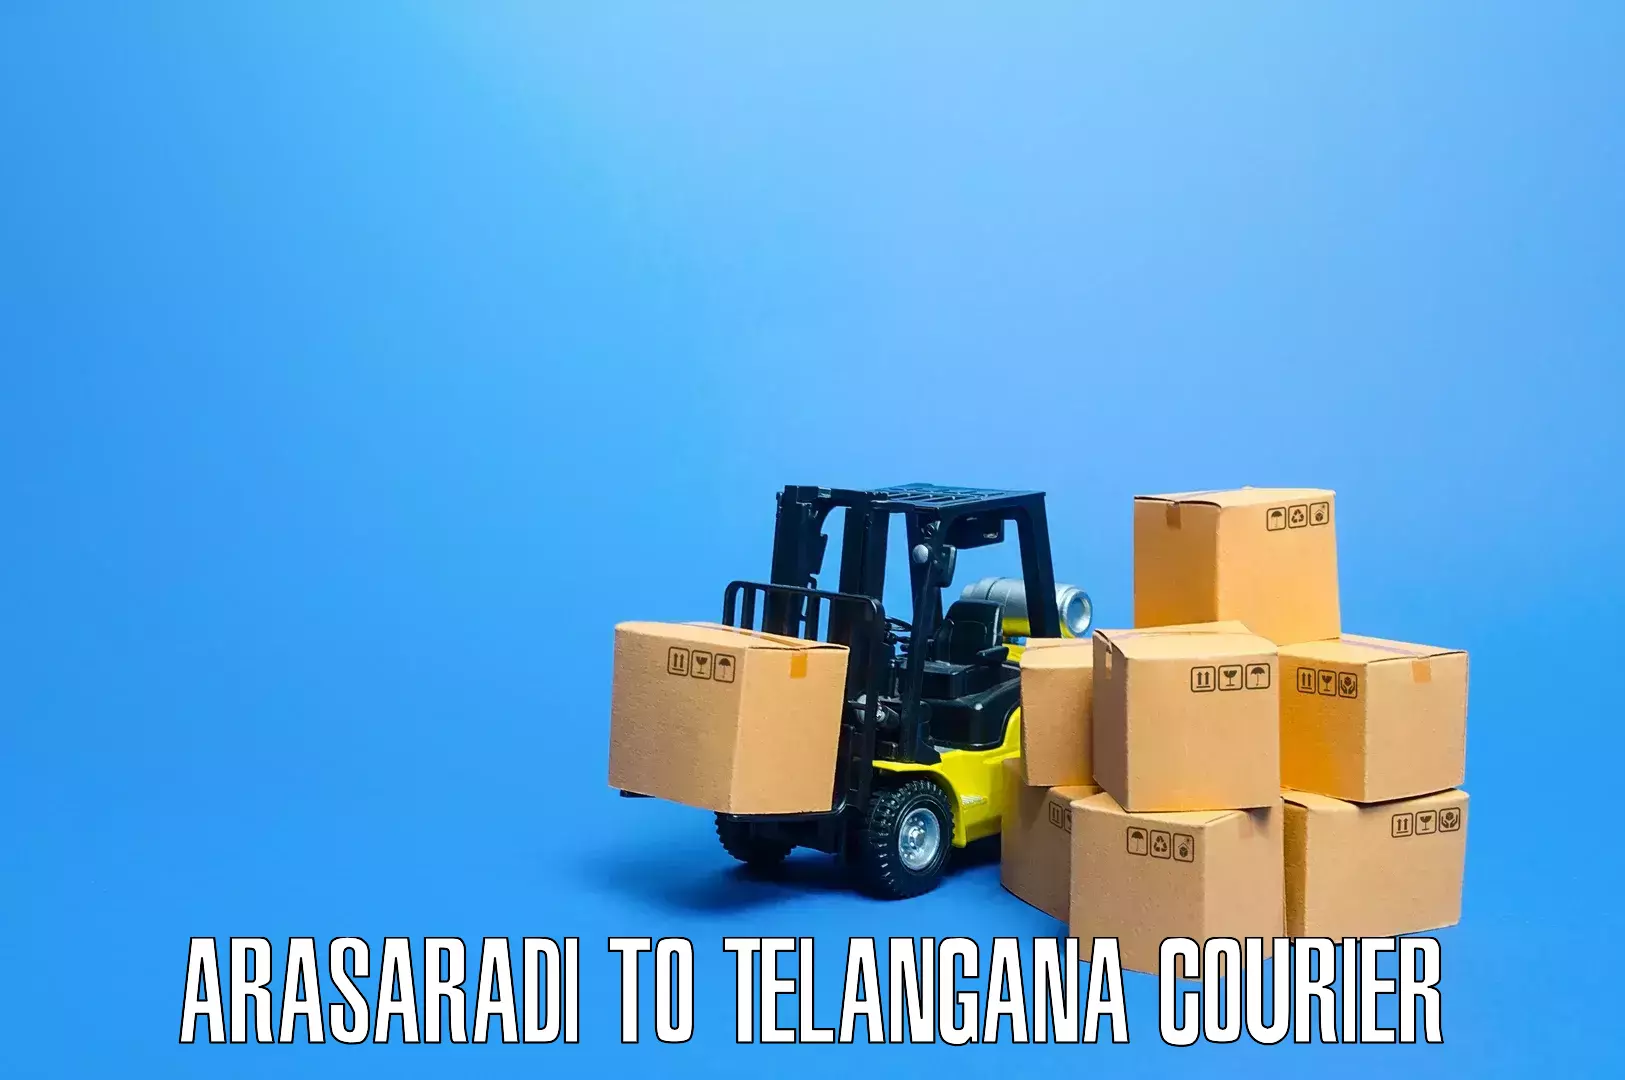 Specialized moving company Arasaradi to Telangana